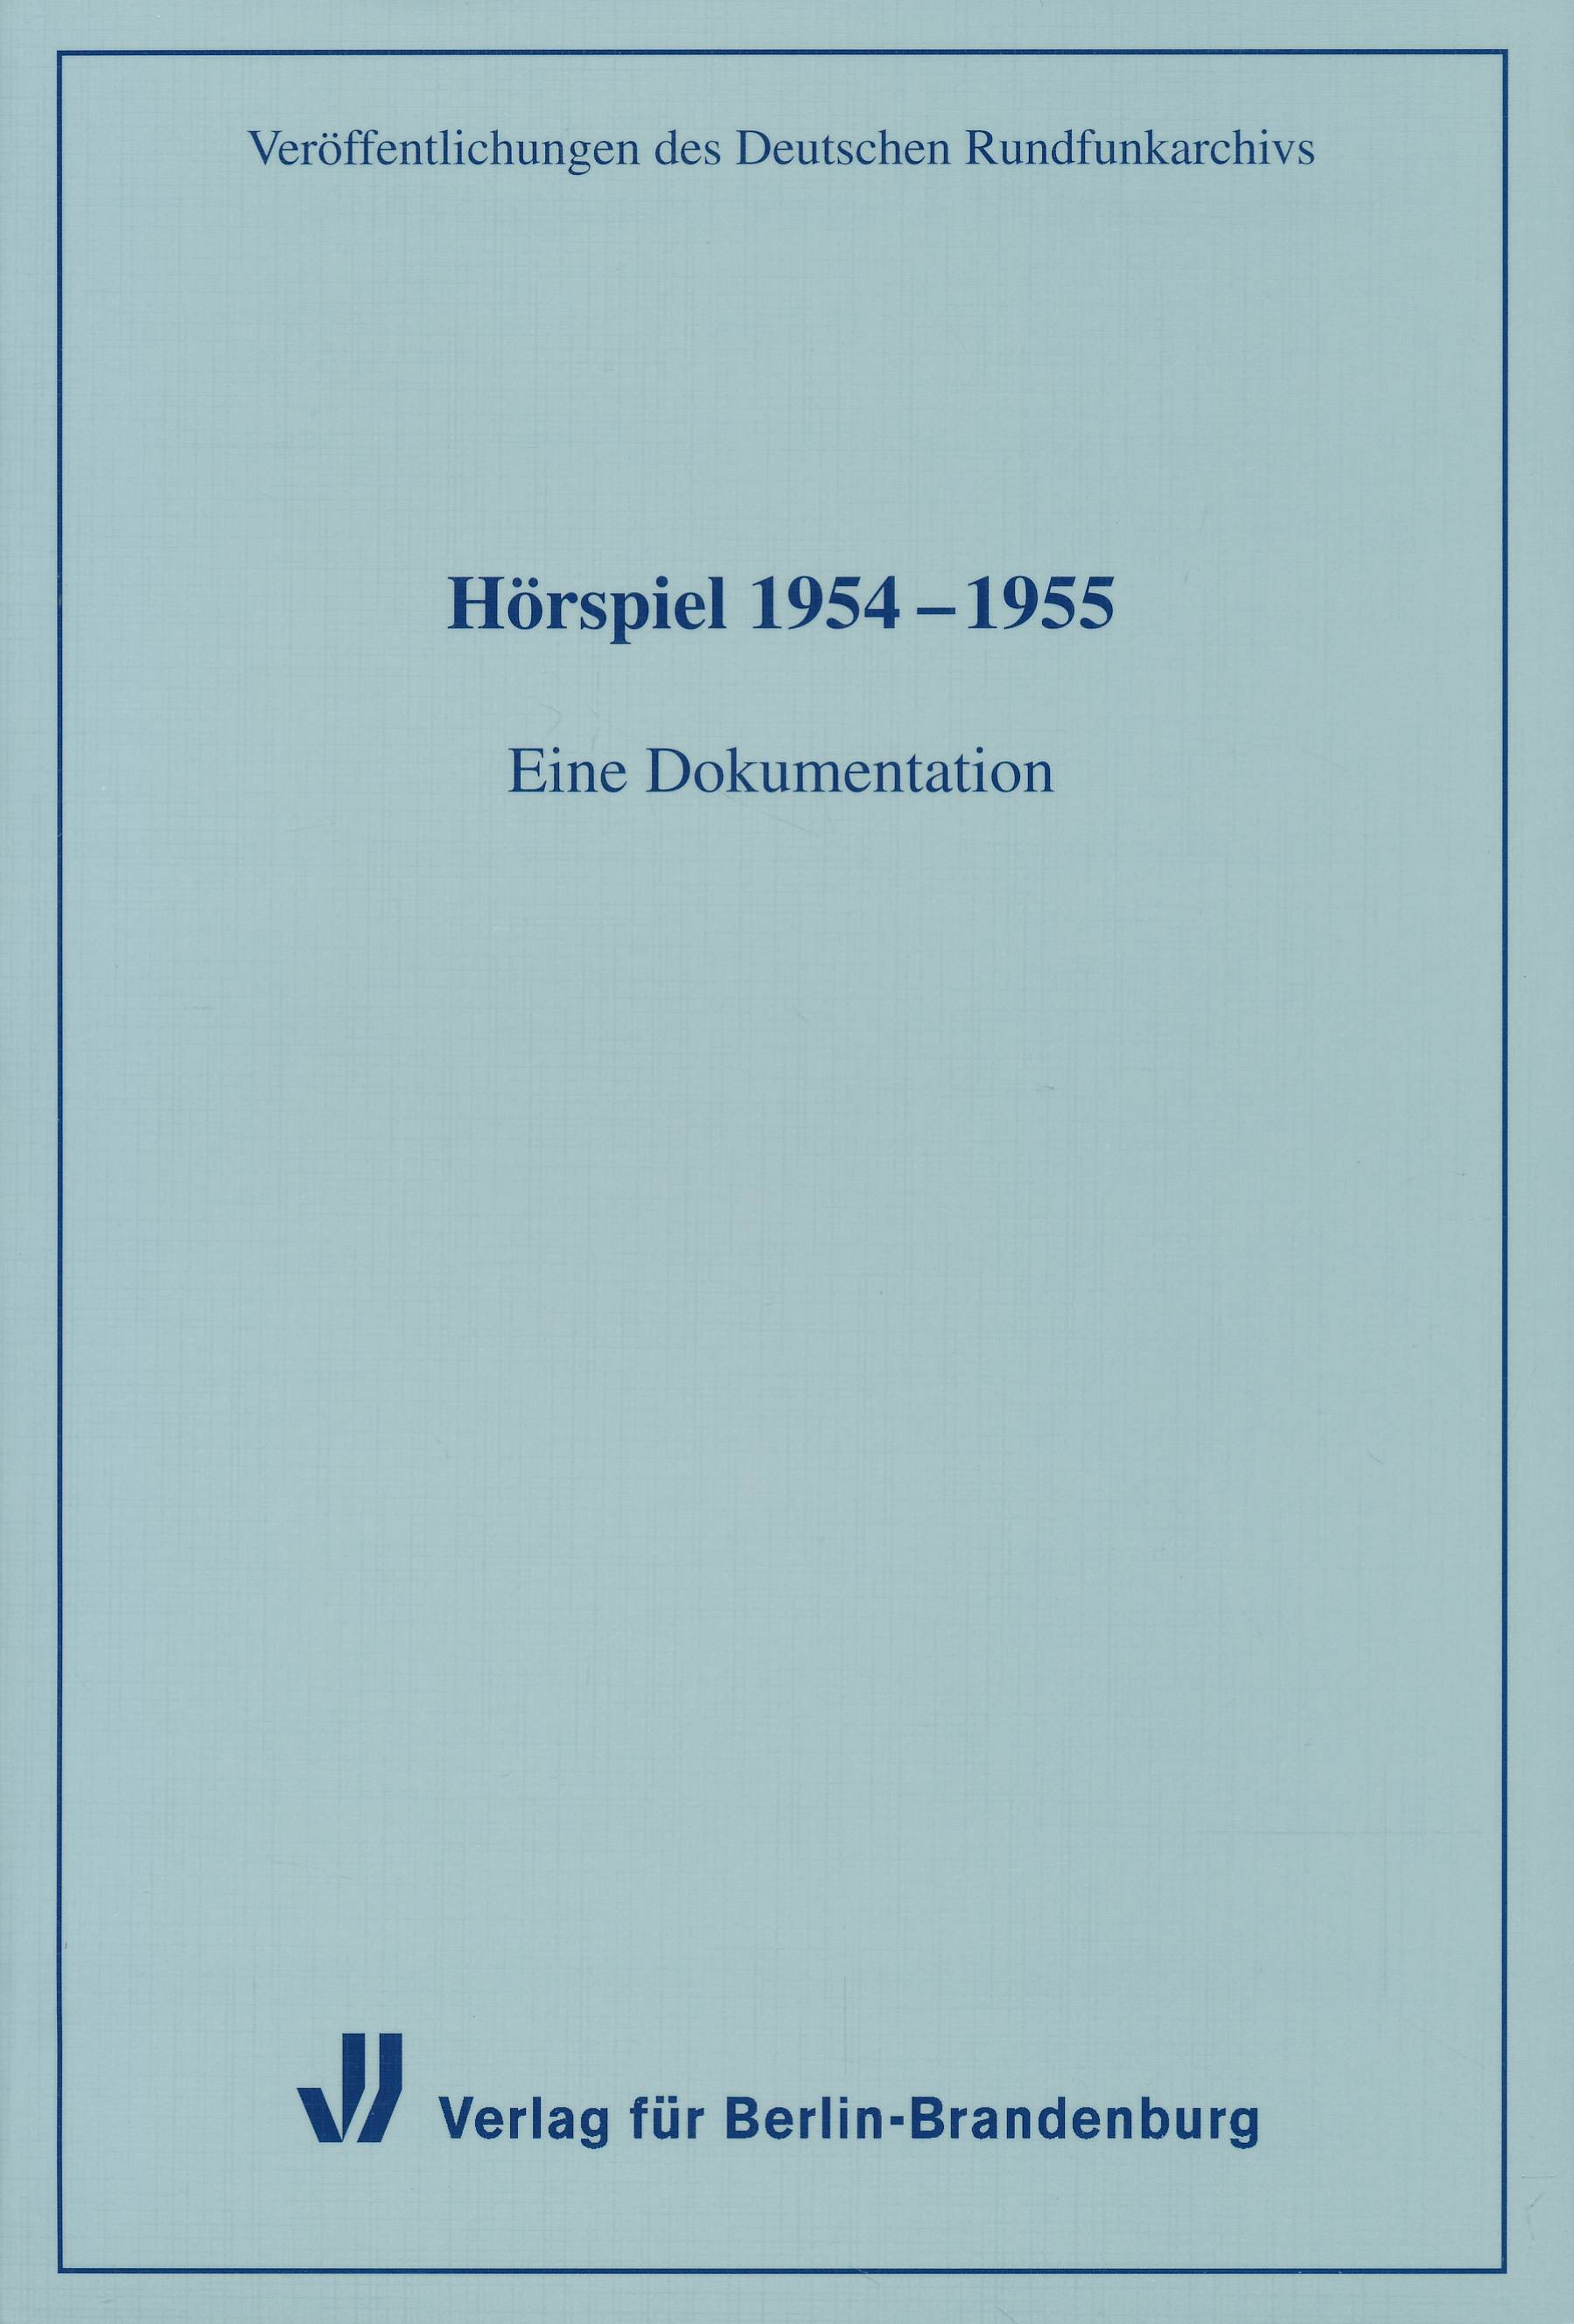 Hörspiel 1954-1955: Eine Dokumentation. (Veröffentlichungen des Deutschen Rundfunkarchivs, Band 21). - Deutsches Rundfunkarchiv (Hrsg.)